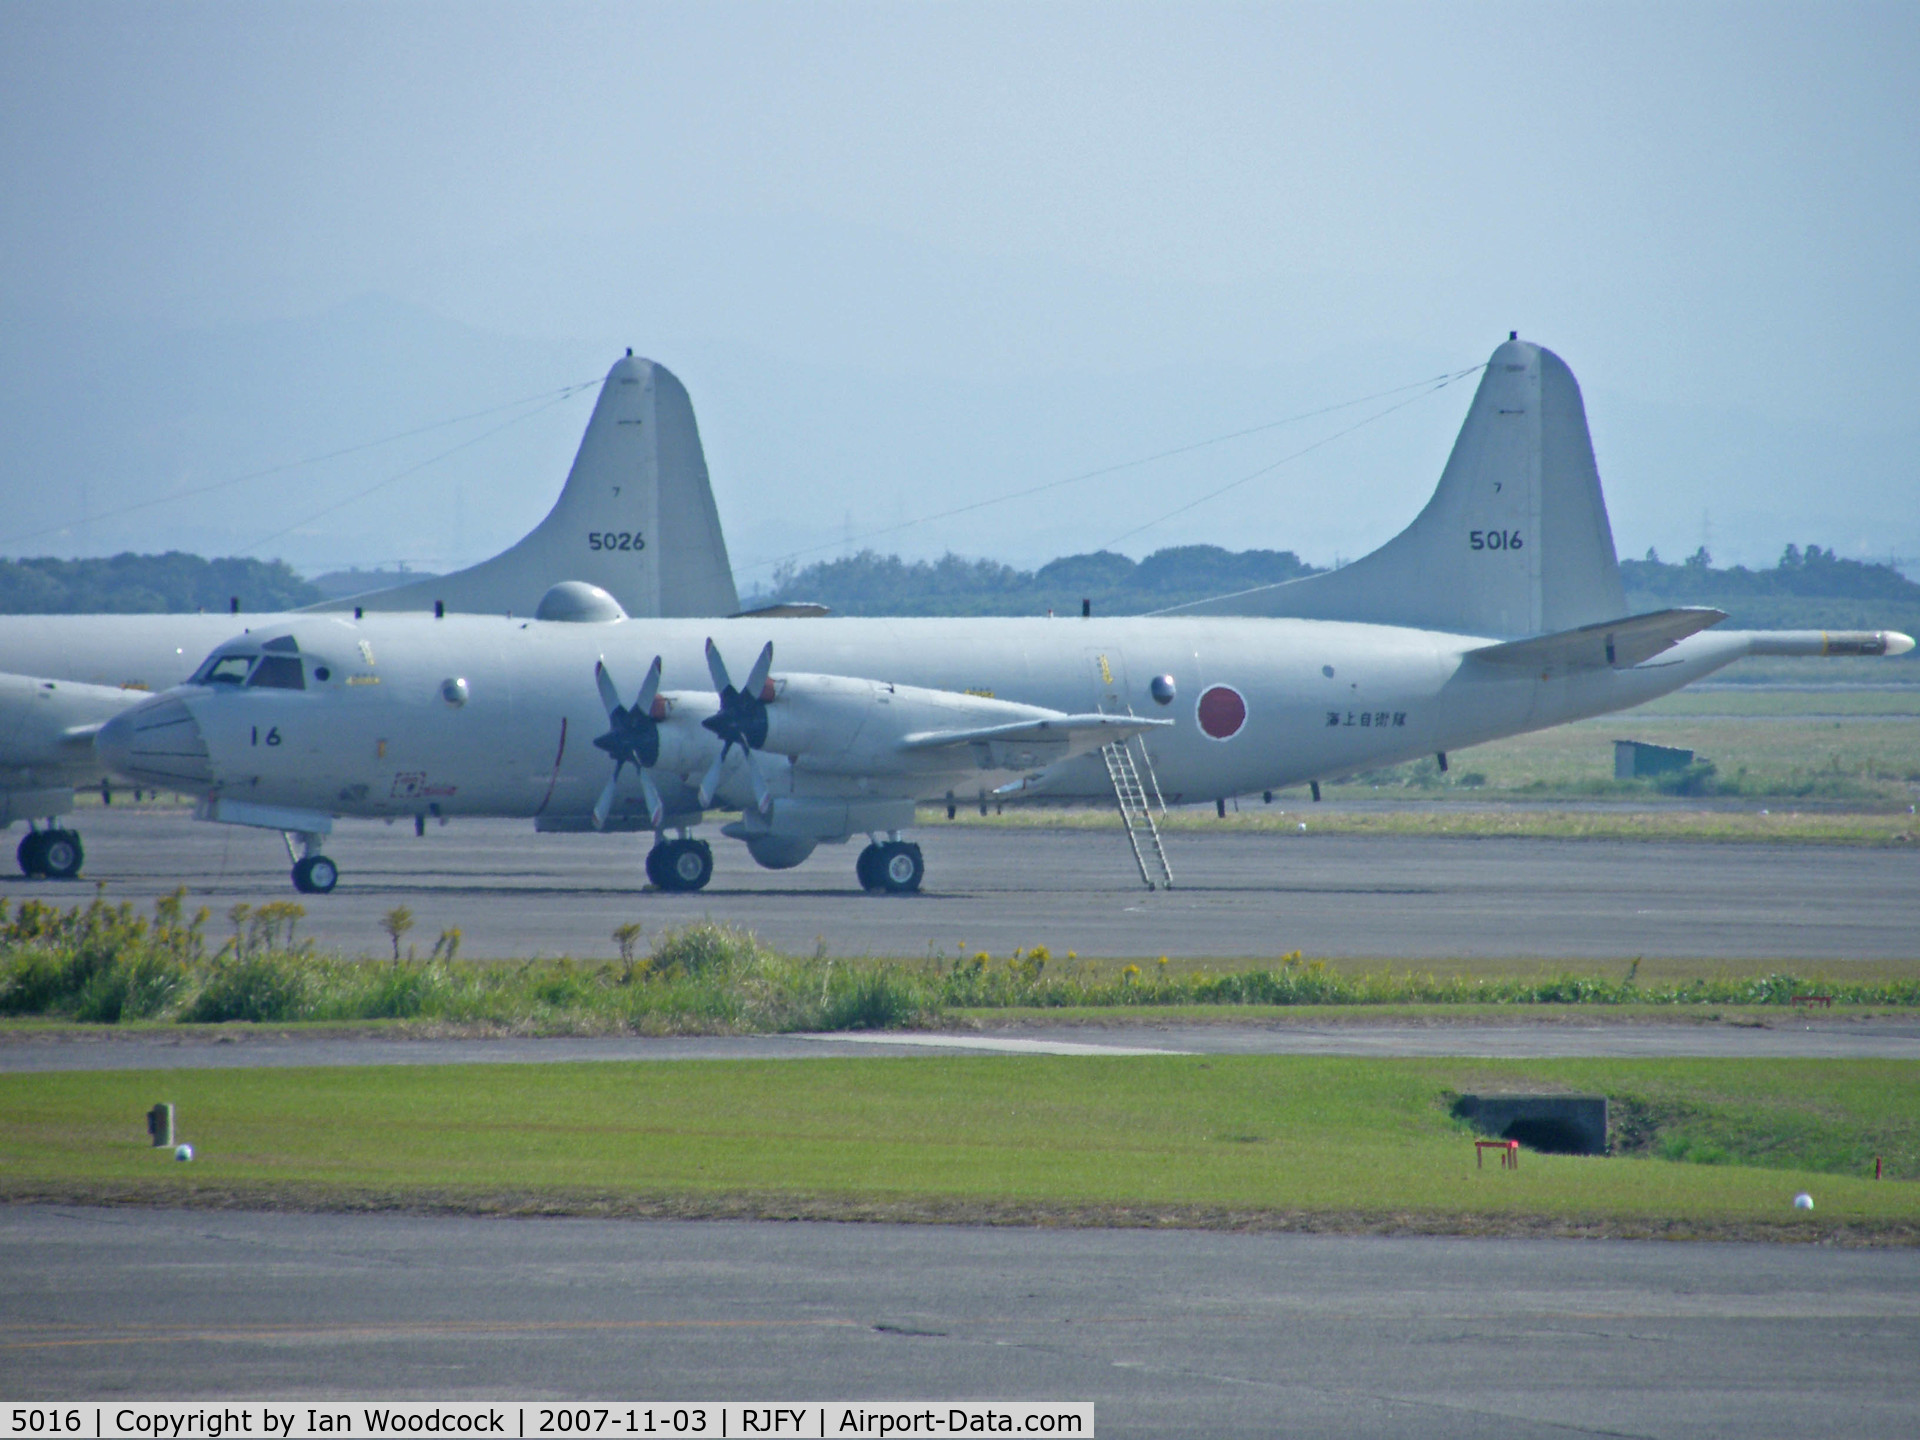 5016, Kawasaki P-3C Orion C/N 9013, Lockheed P-3C/Kanoya AB